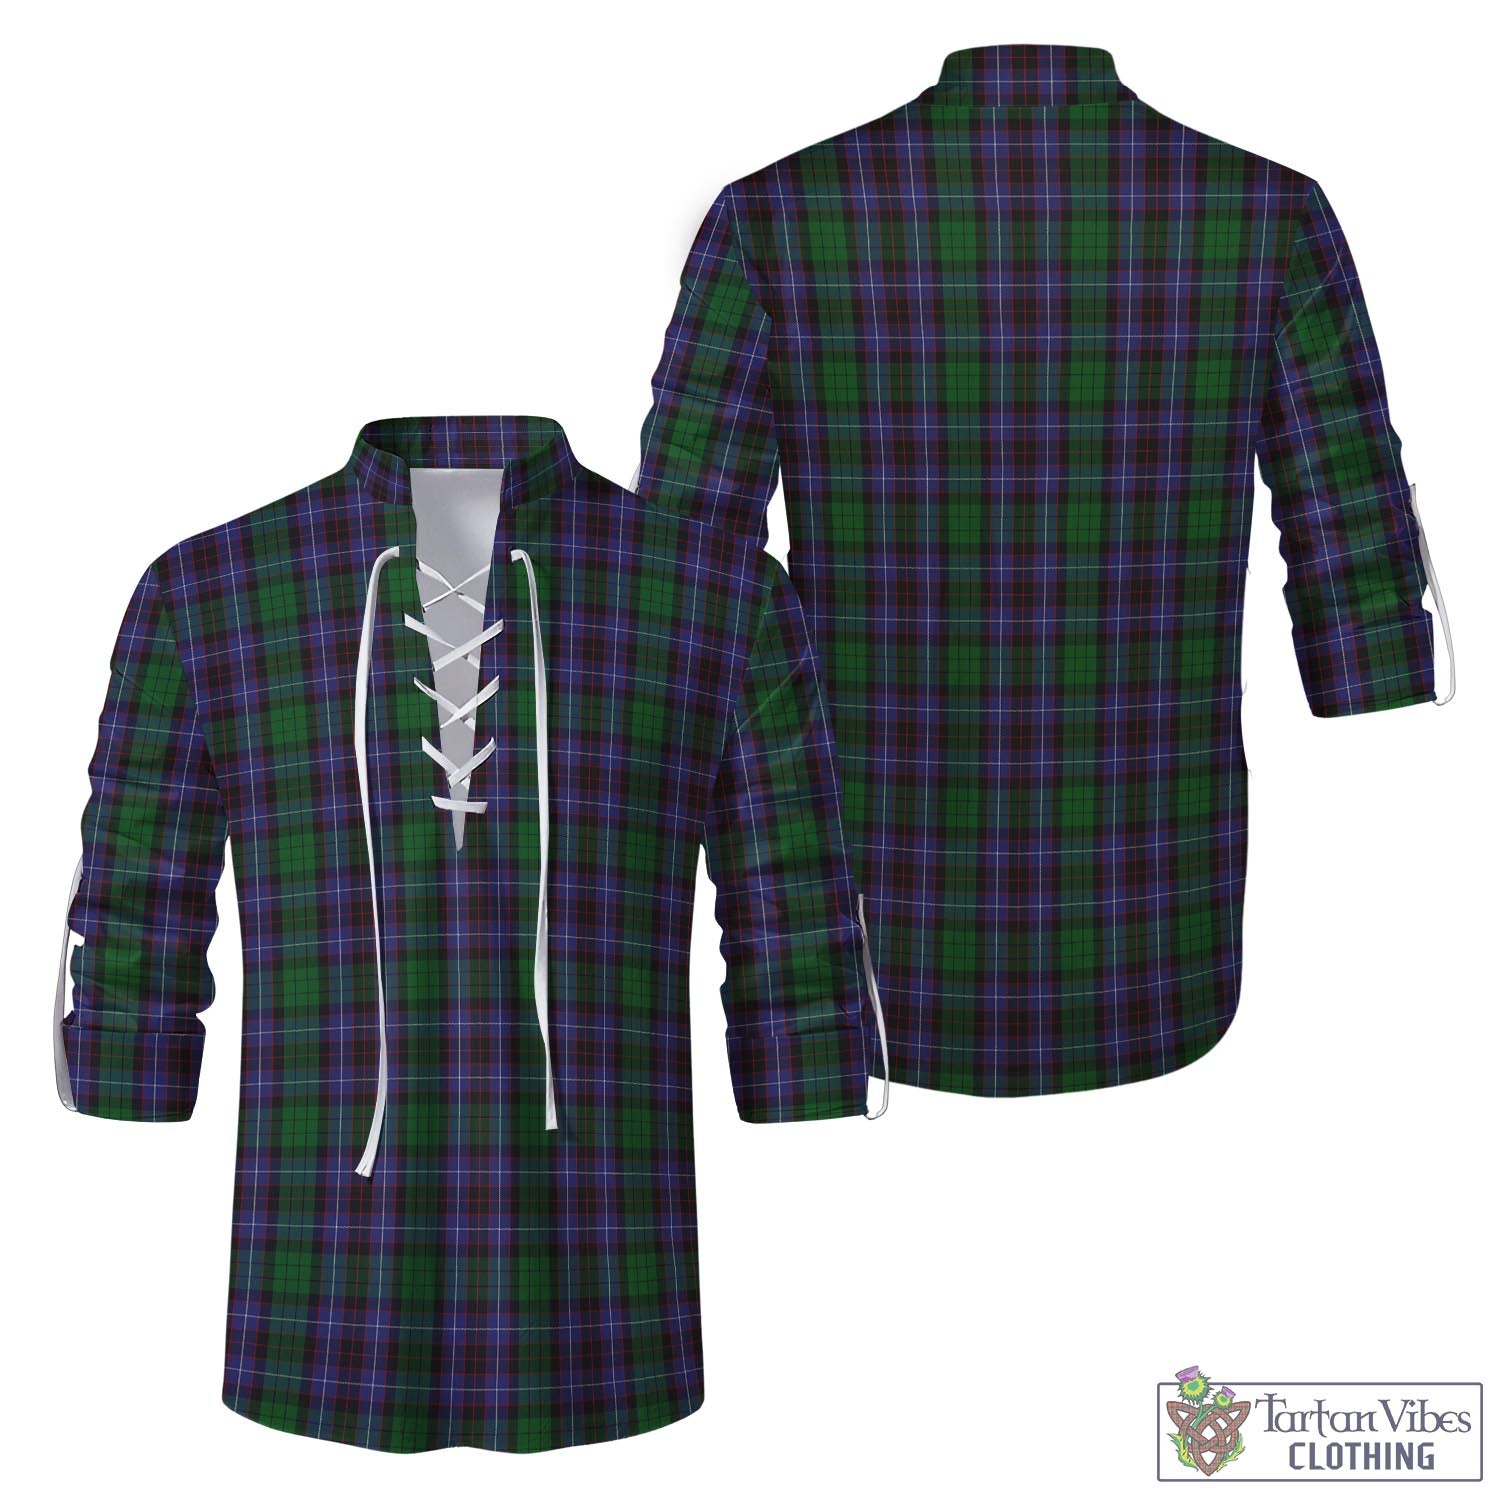 Tartan Vibes Clothing Hunter of Peebleshire Tartan Men's Scottish Traditional Jacobite Ghillie Kilt Shirt